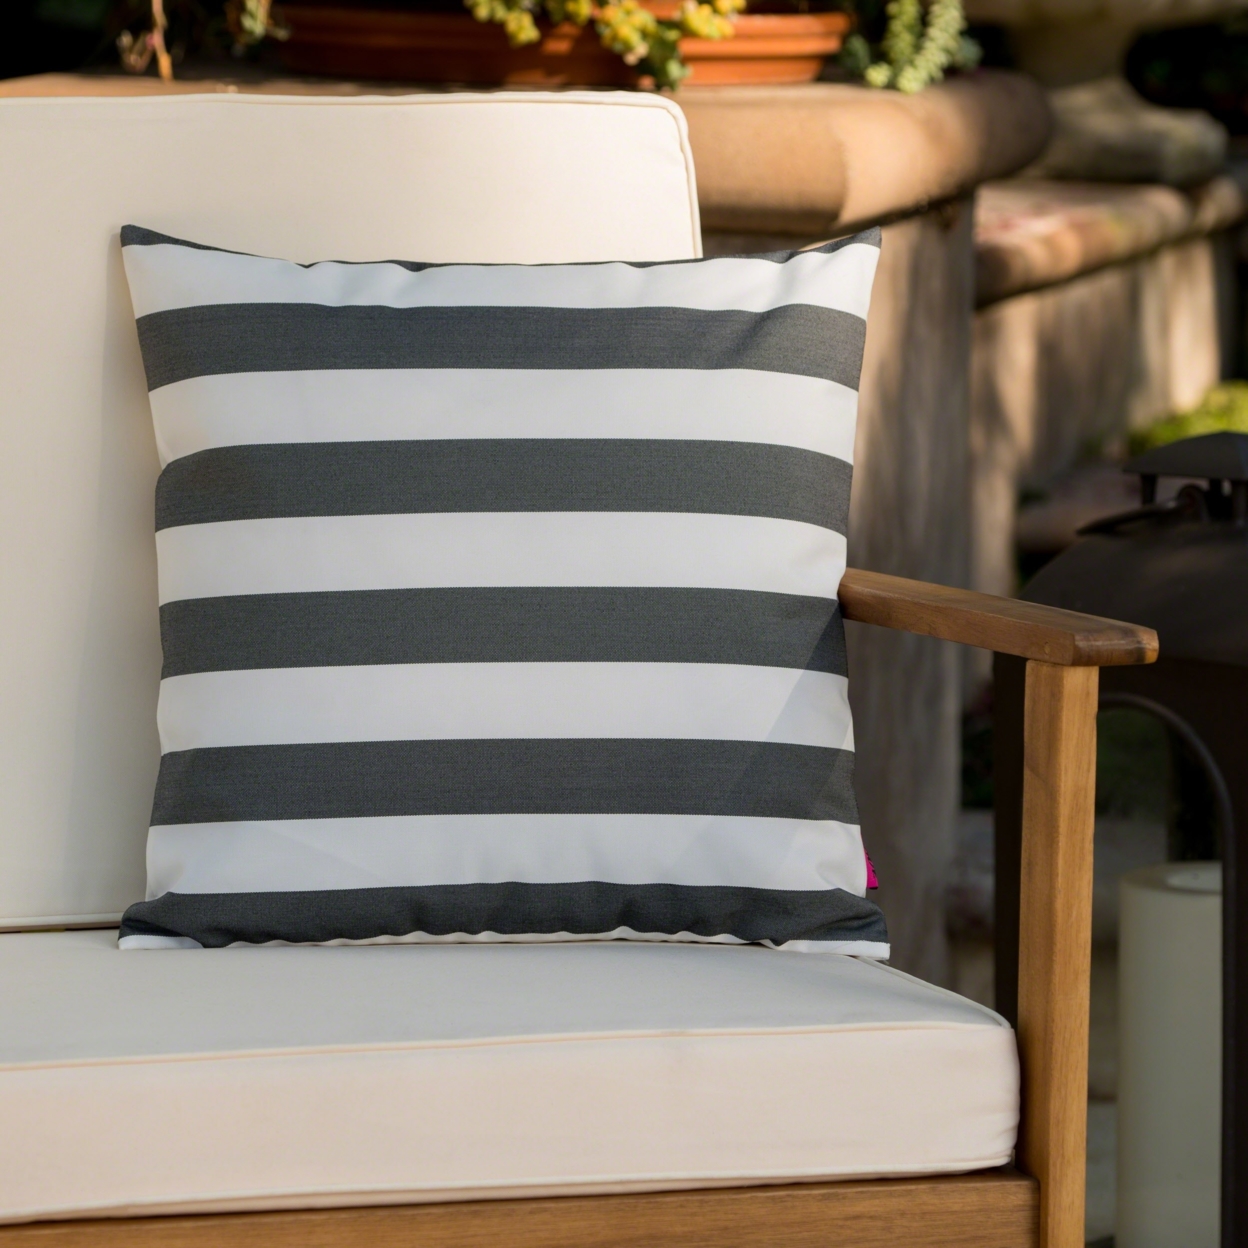 Coronado Outdoor Stripe Water Resistant Square Throw Pillow - Dark Teal/white, Set Of 2